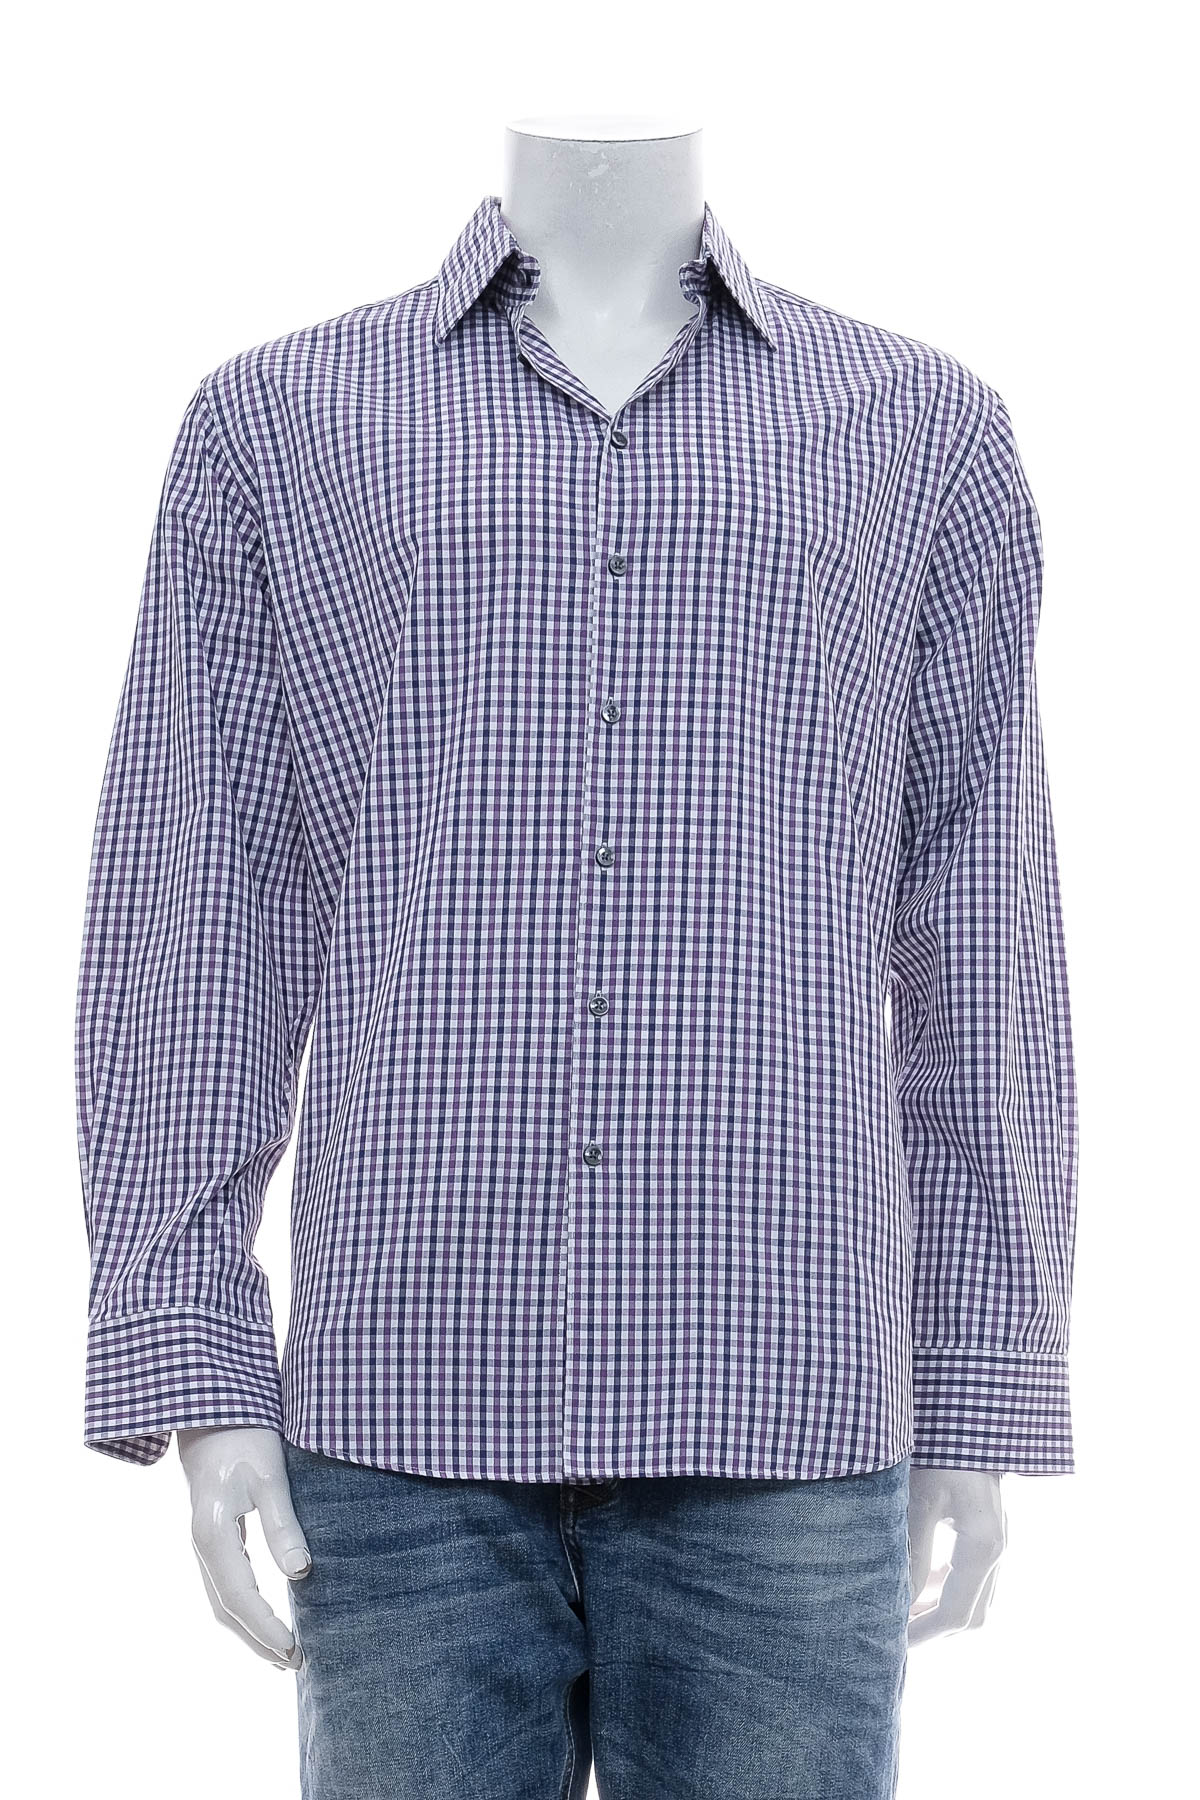 Ανδρικό πουκάμισο - Tom Rusborg - 0